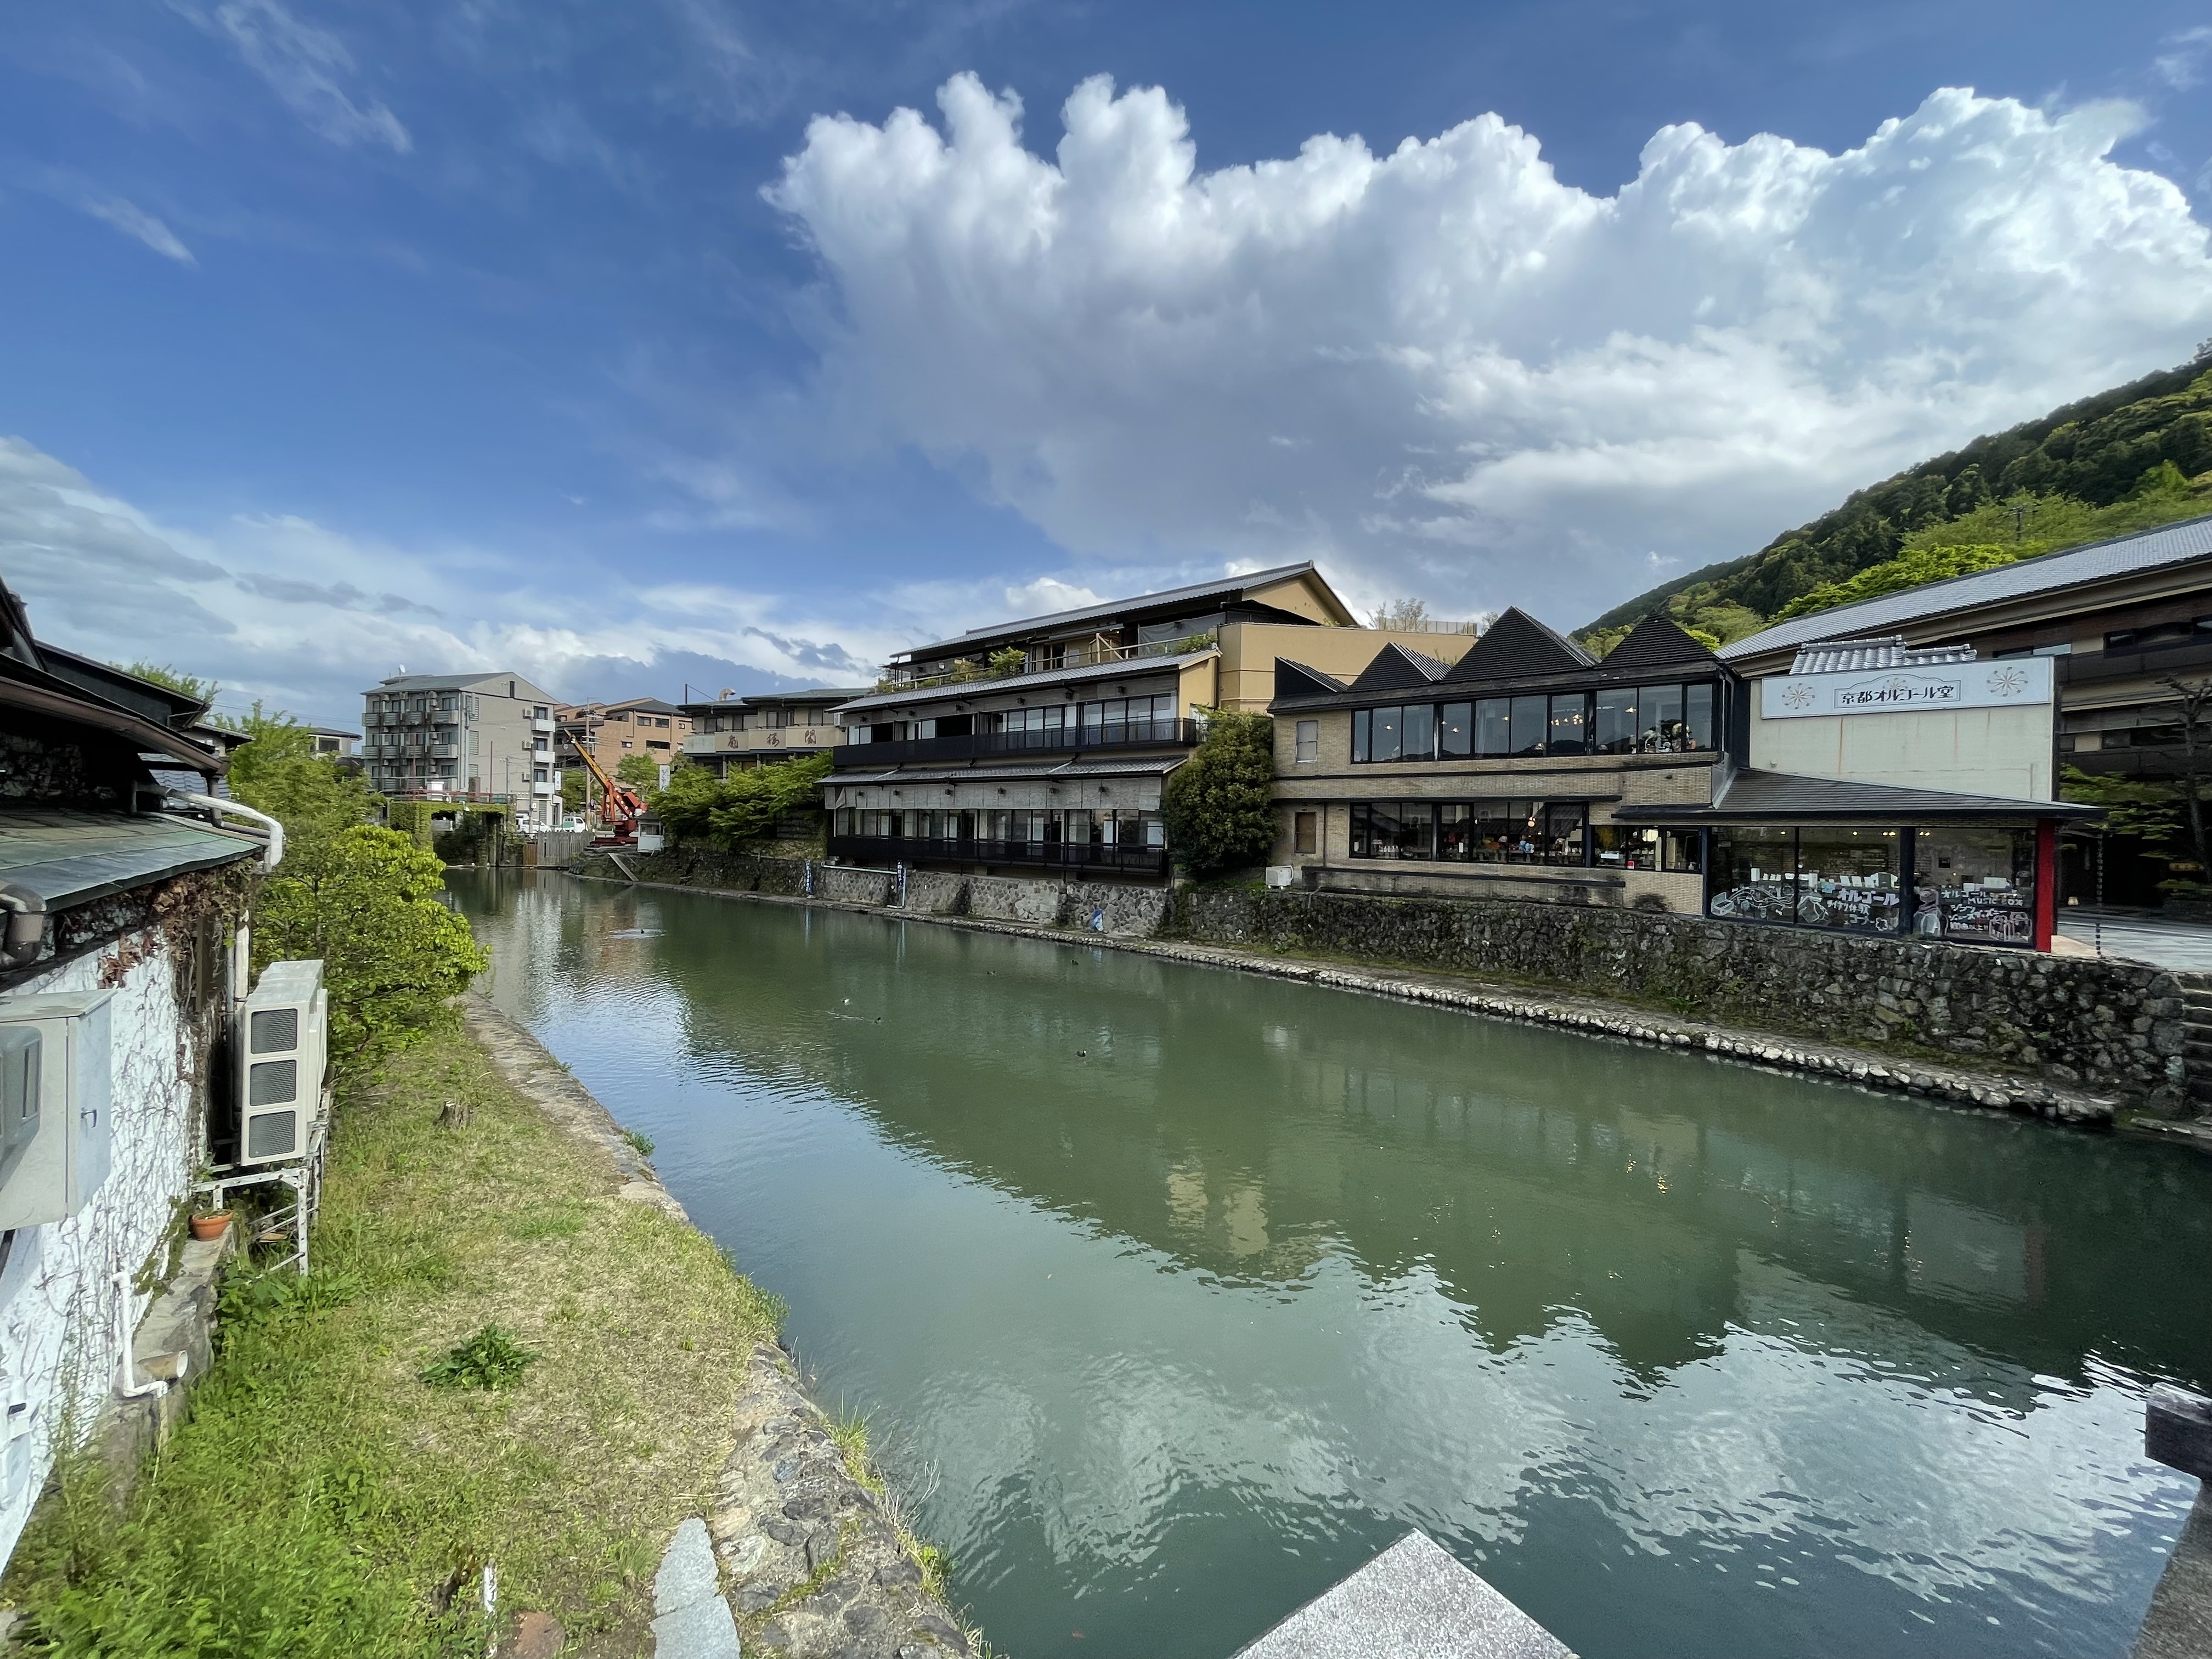 Restaurants and shops along Katsuragawa